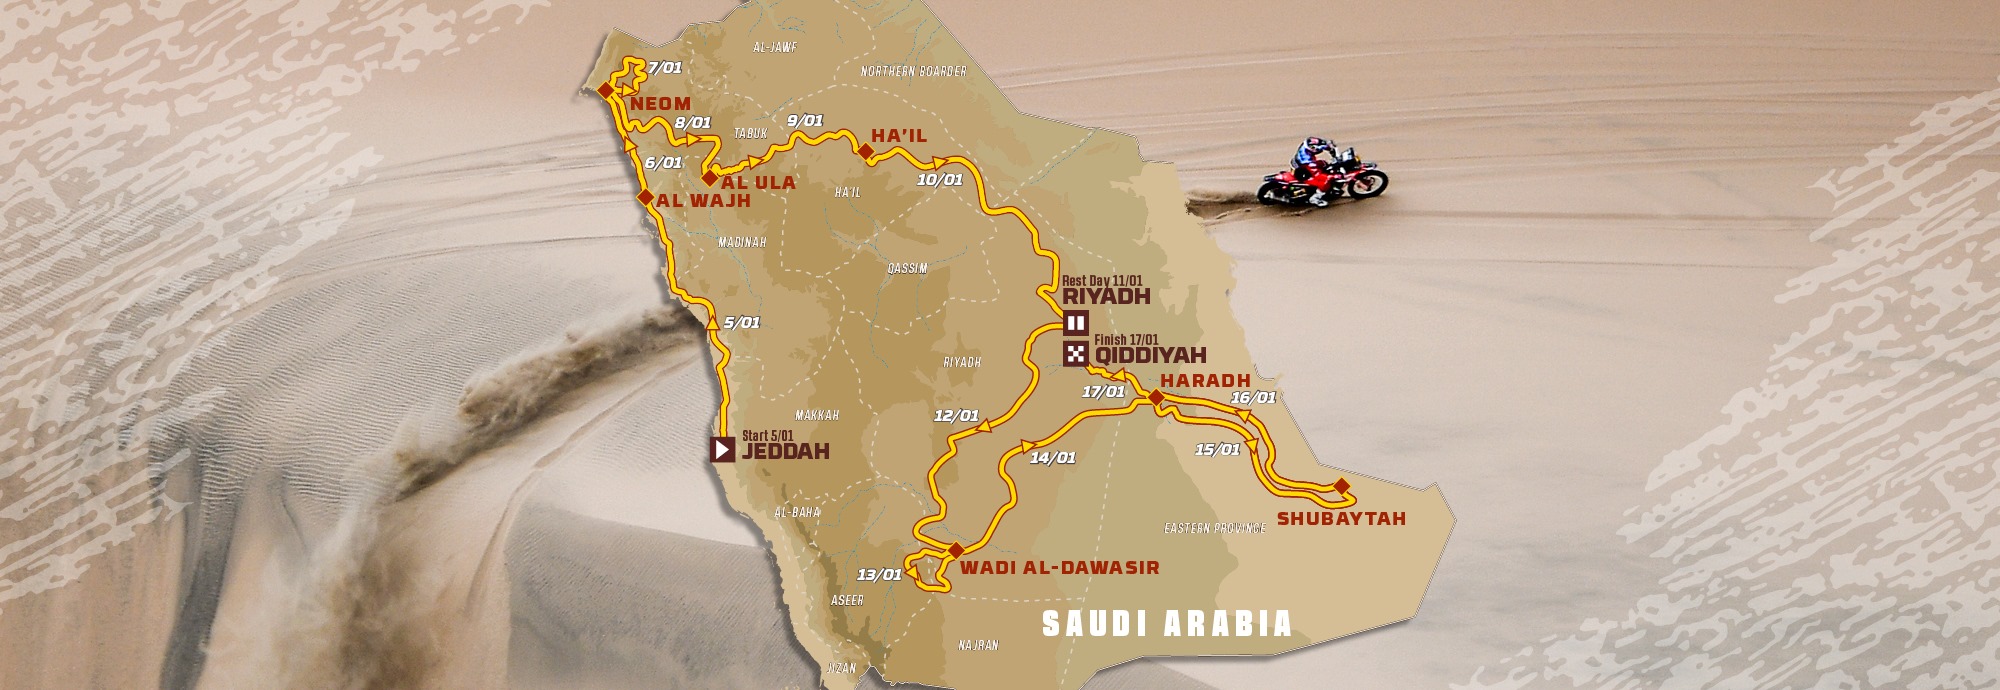 42eme Rallye-Dakar : Le départ prévu le 5 janvier en Arabie Saoudite, 351 véhicules, 170 motos et quads, 134 autos, et 47 camions attendus.